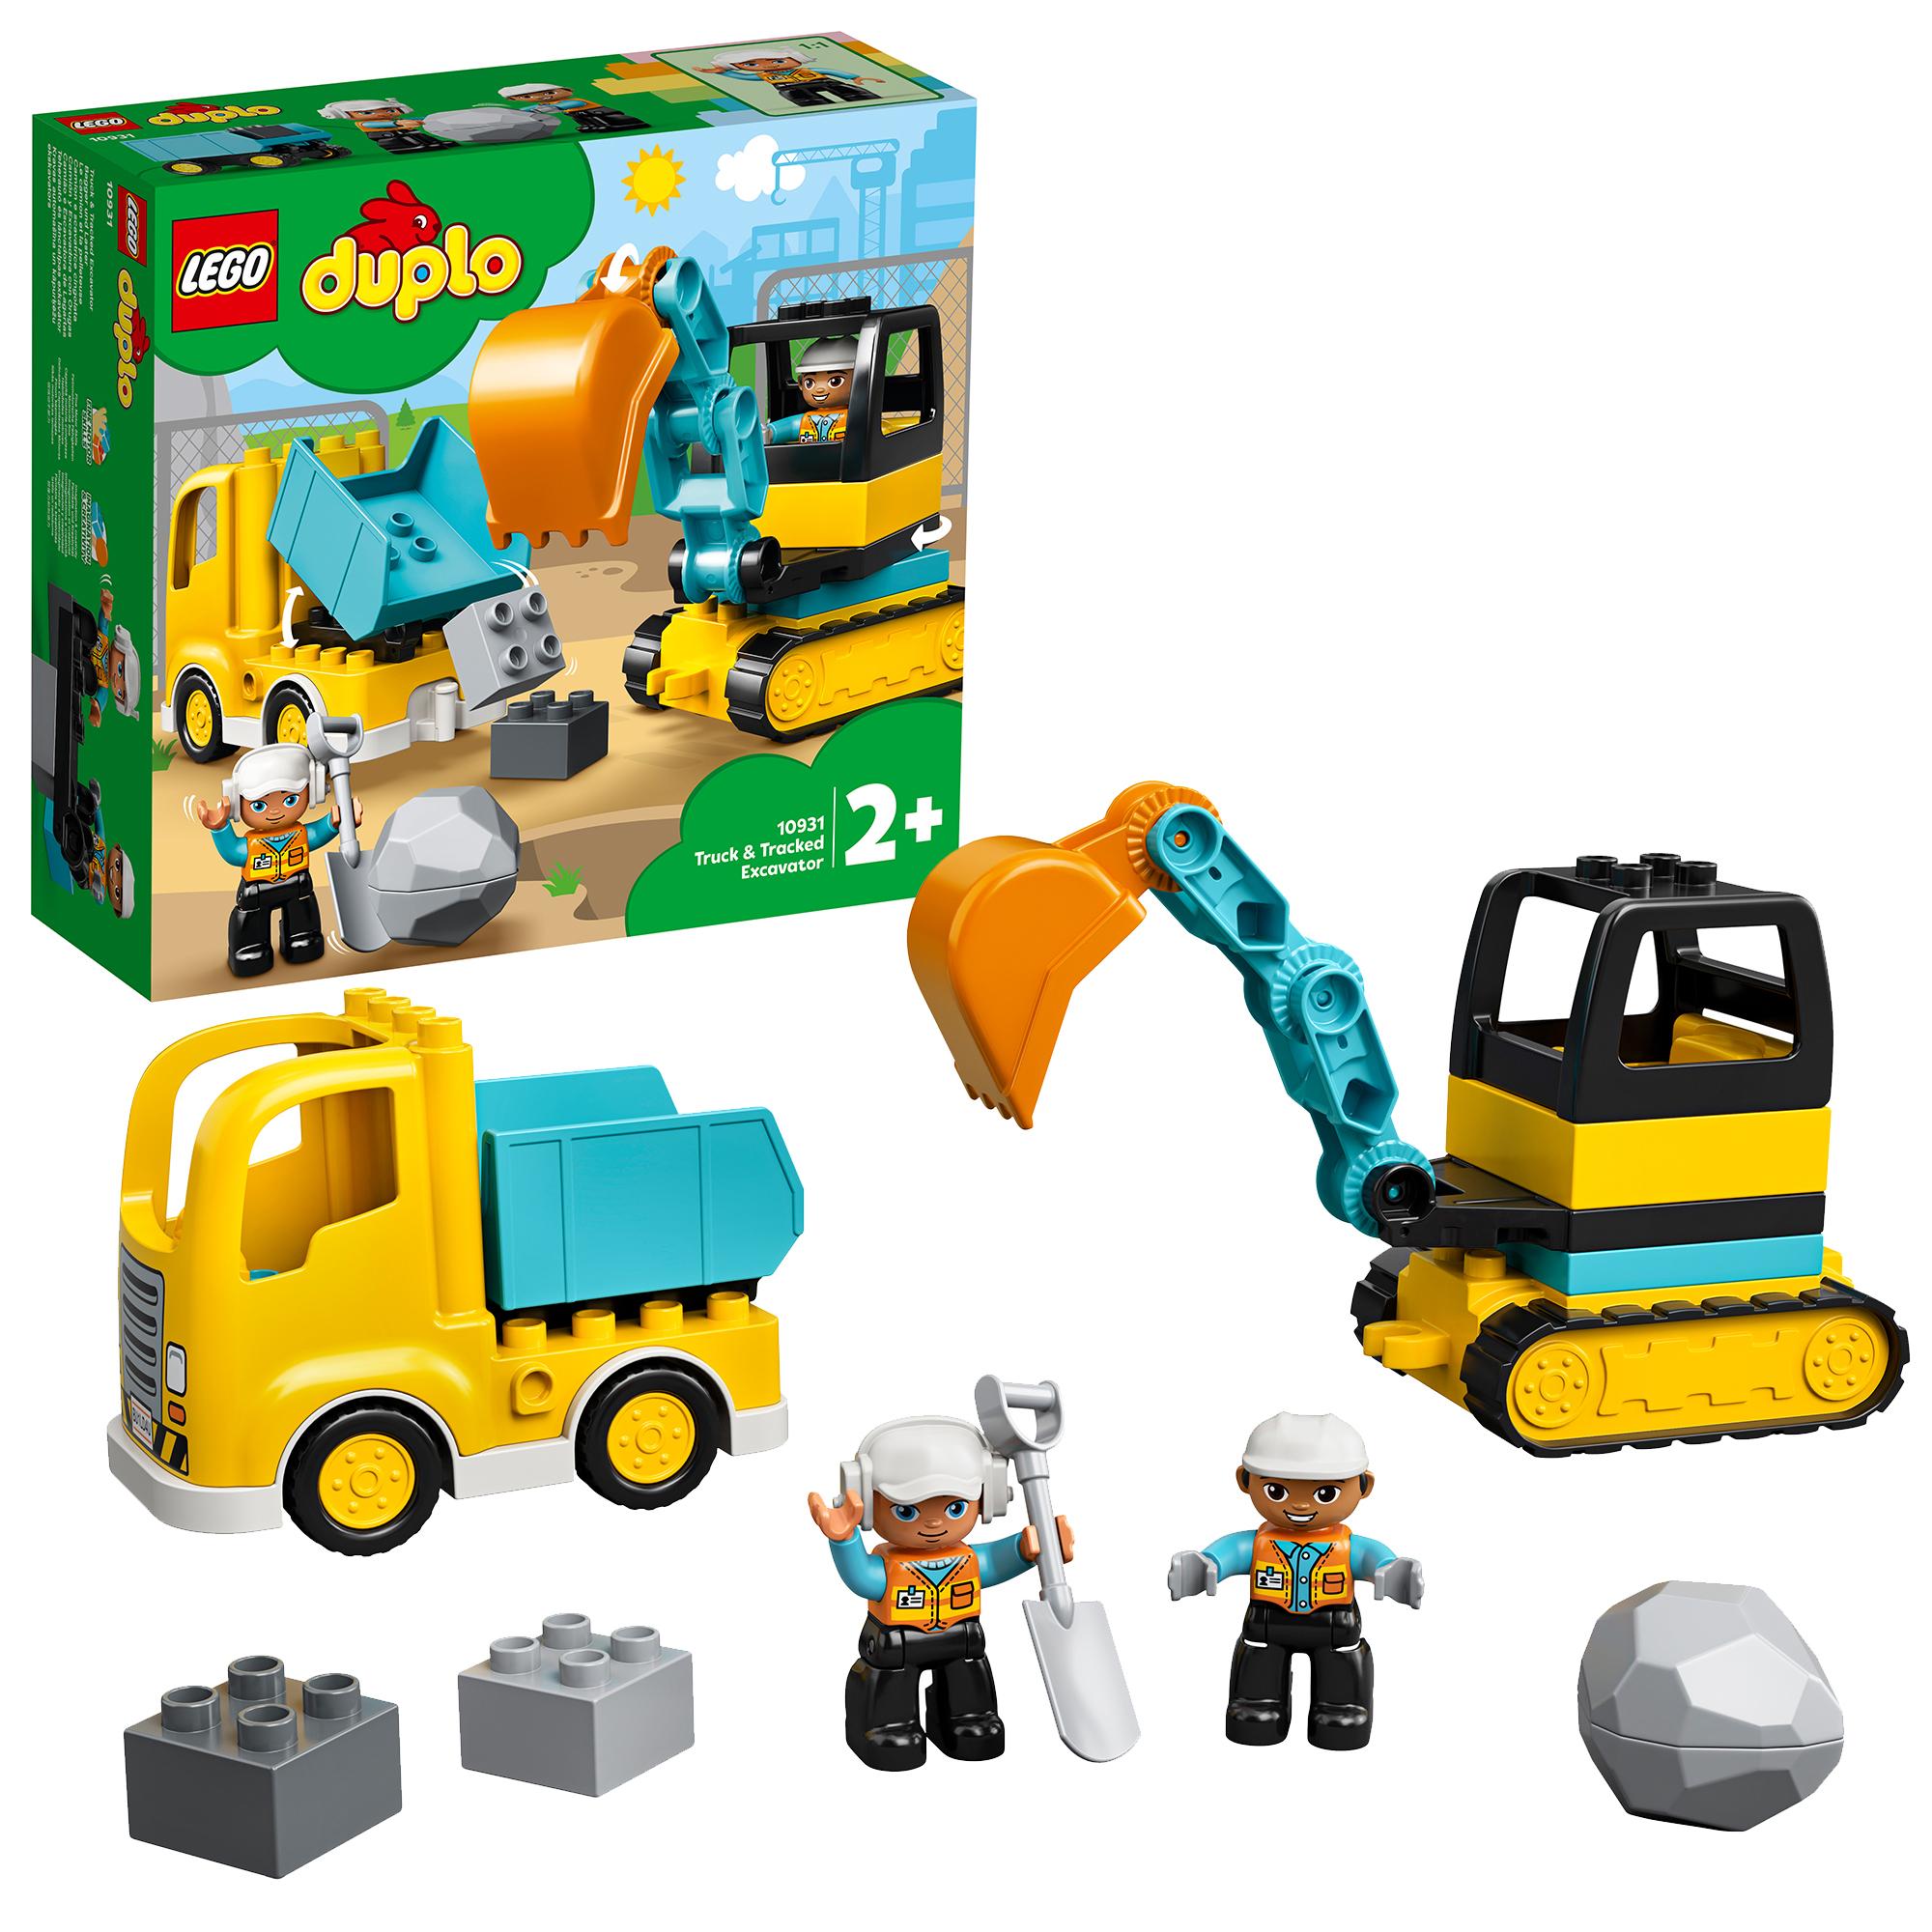 LEGO DUPLO Town 10931 Camion e Scavatrice Cingolata, Scavatore Giocattolo,  Sviluppo delle Abilità Motorie, Giochi per Bambini - Toys Center